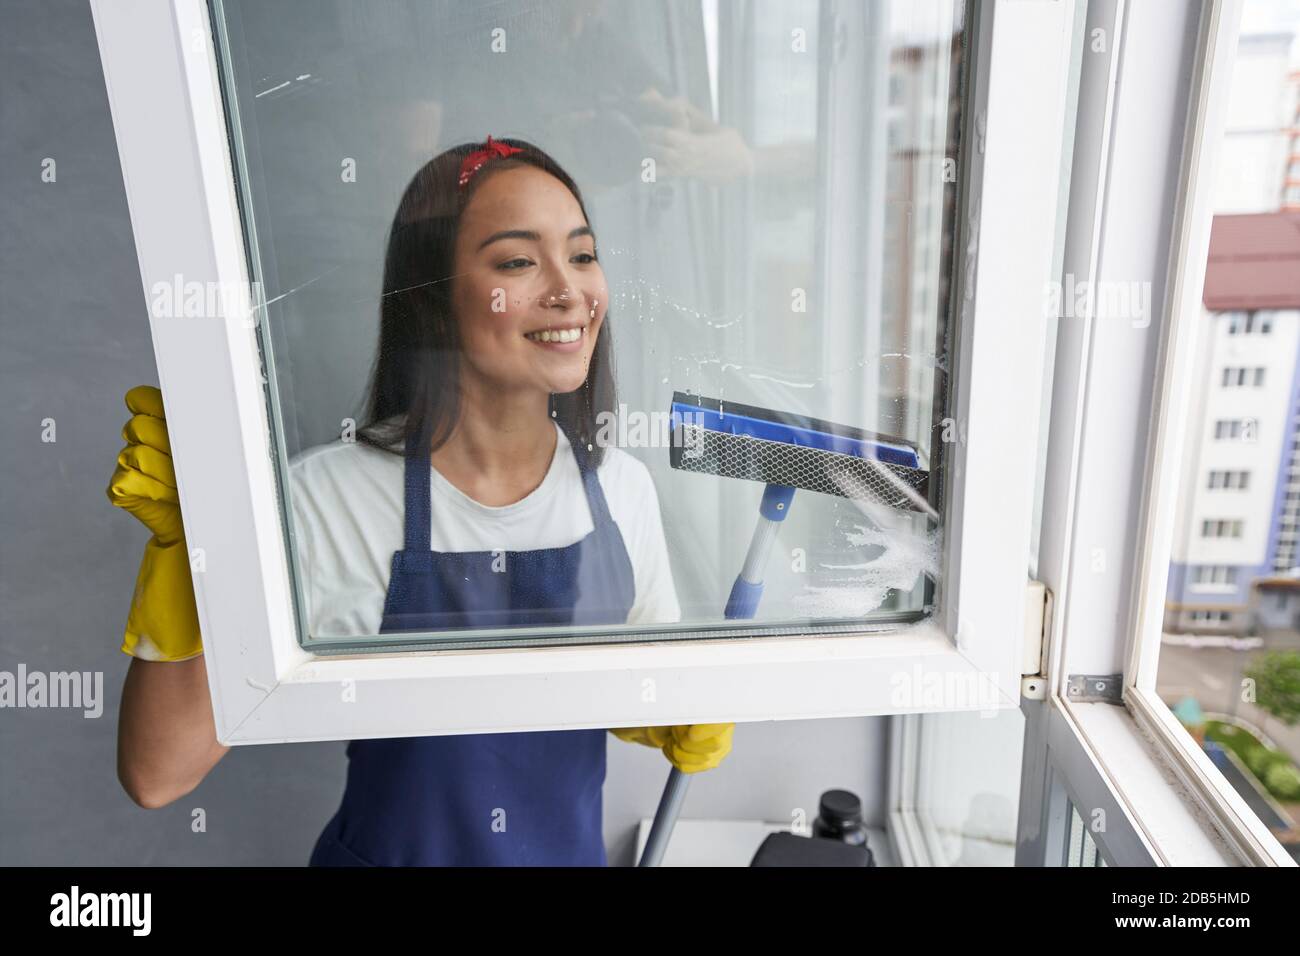 Schnell und effizient. Attraktive junge Frau lächelt beim Reinigen des Fensters mit Rakel. Hausarbeit und Housekeeping, Reinigungsdienstkonzept Stockfoto